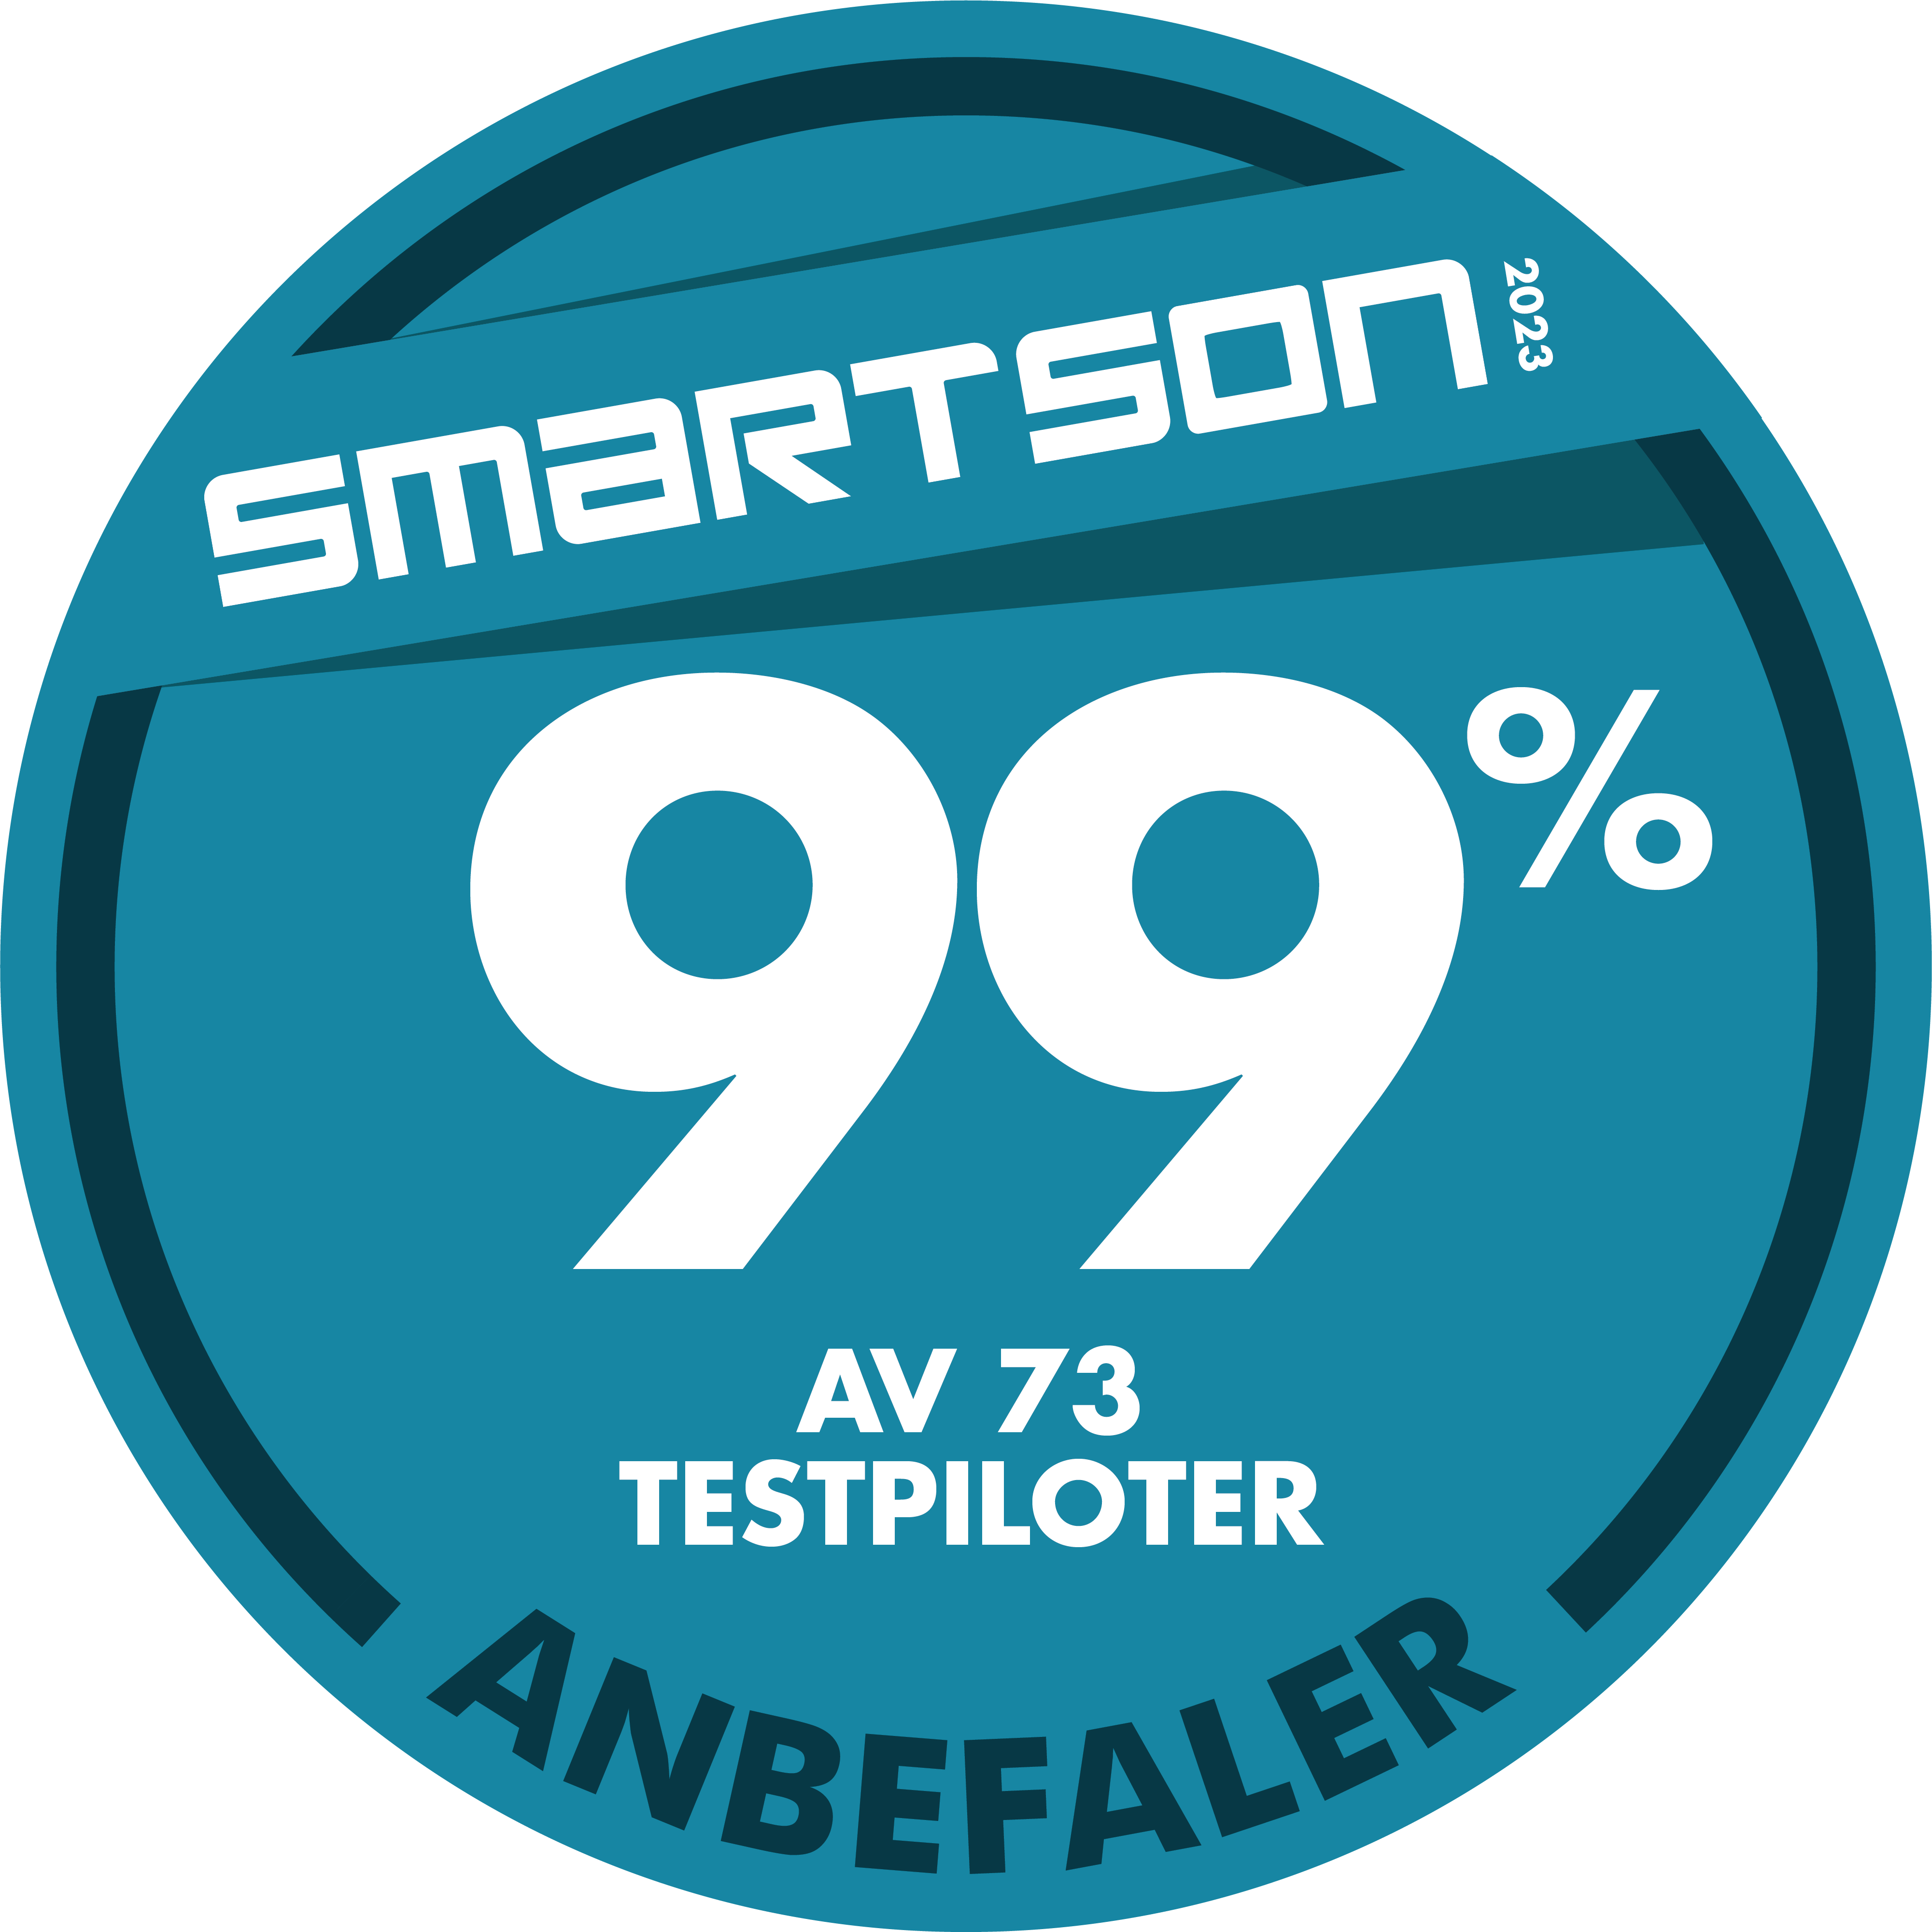 Smartson Badge - 99% Av 73% Testpiloter